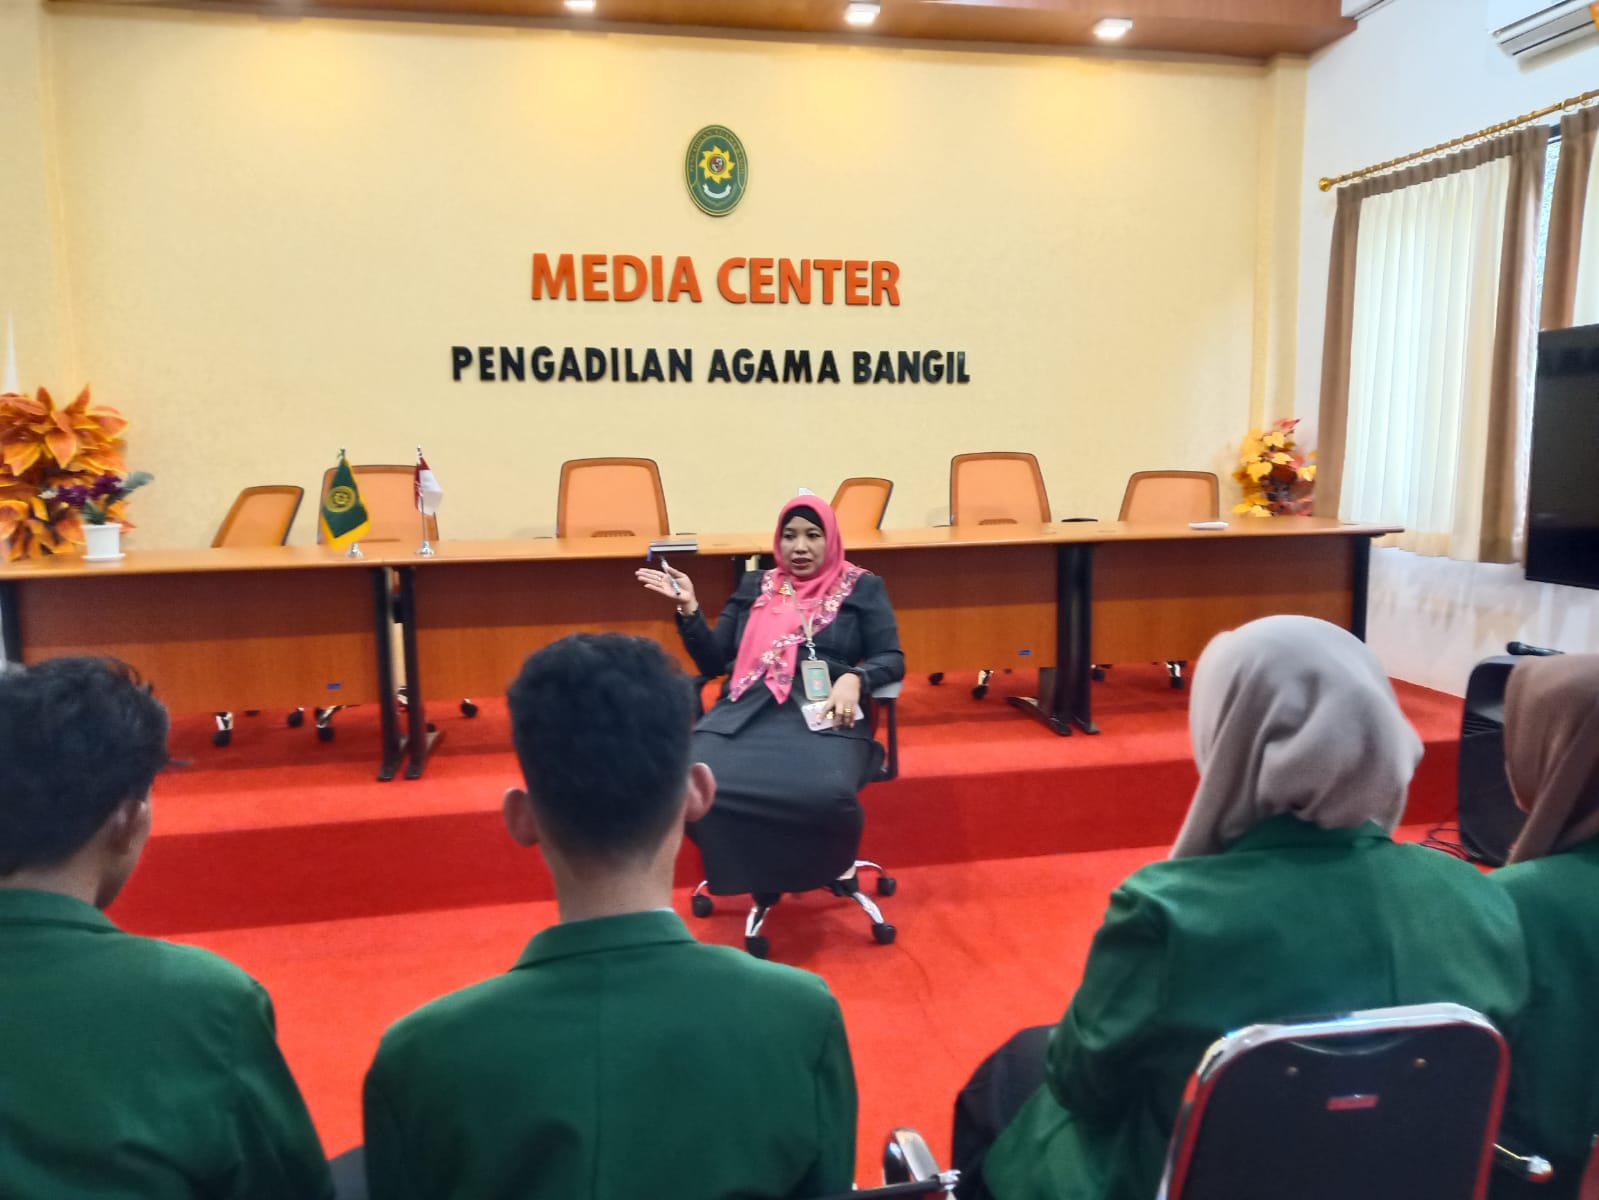 “Materi Kuliah Umum oleh Ketua dan Wakil Ketua PA Bangil”